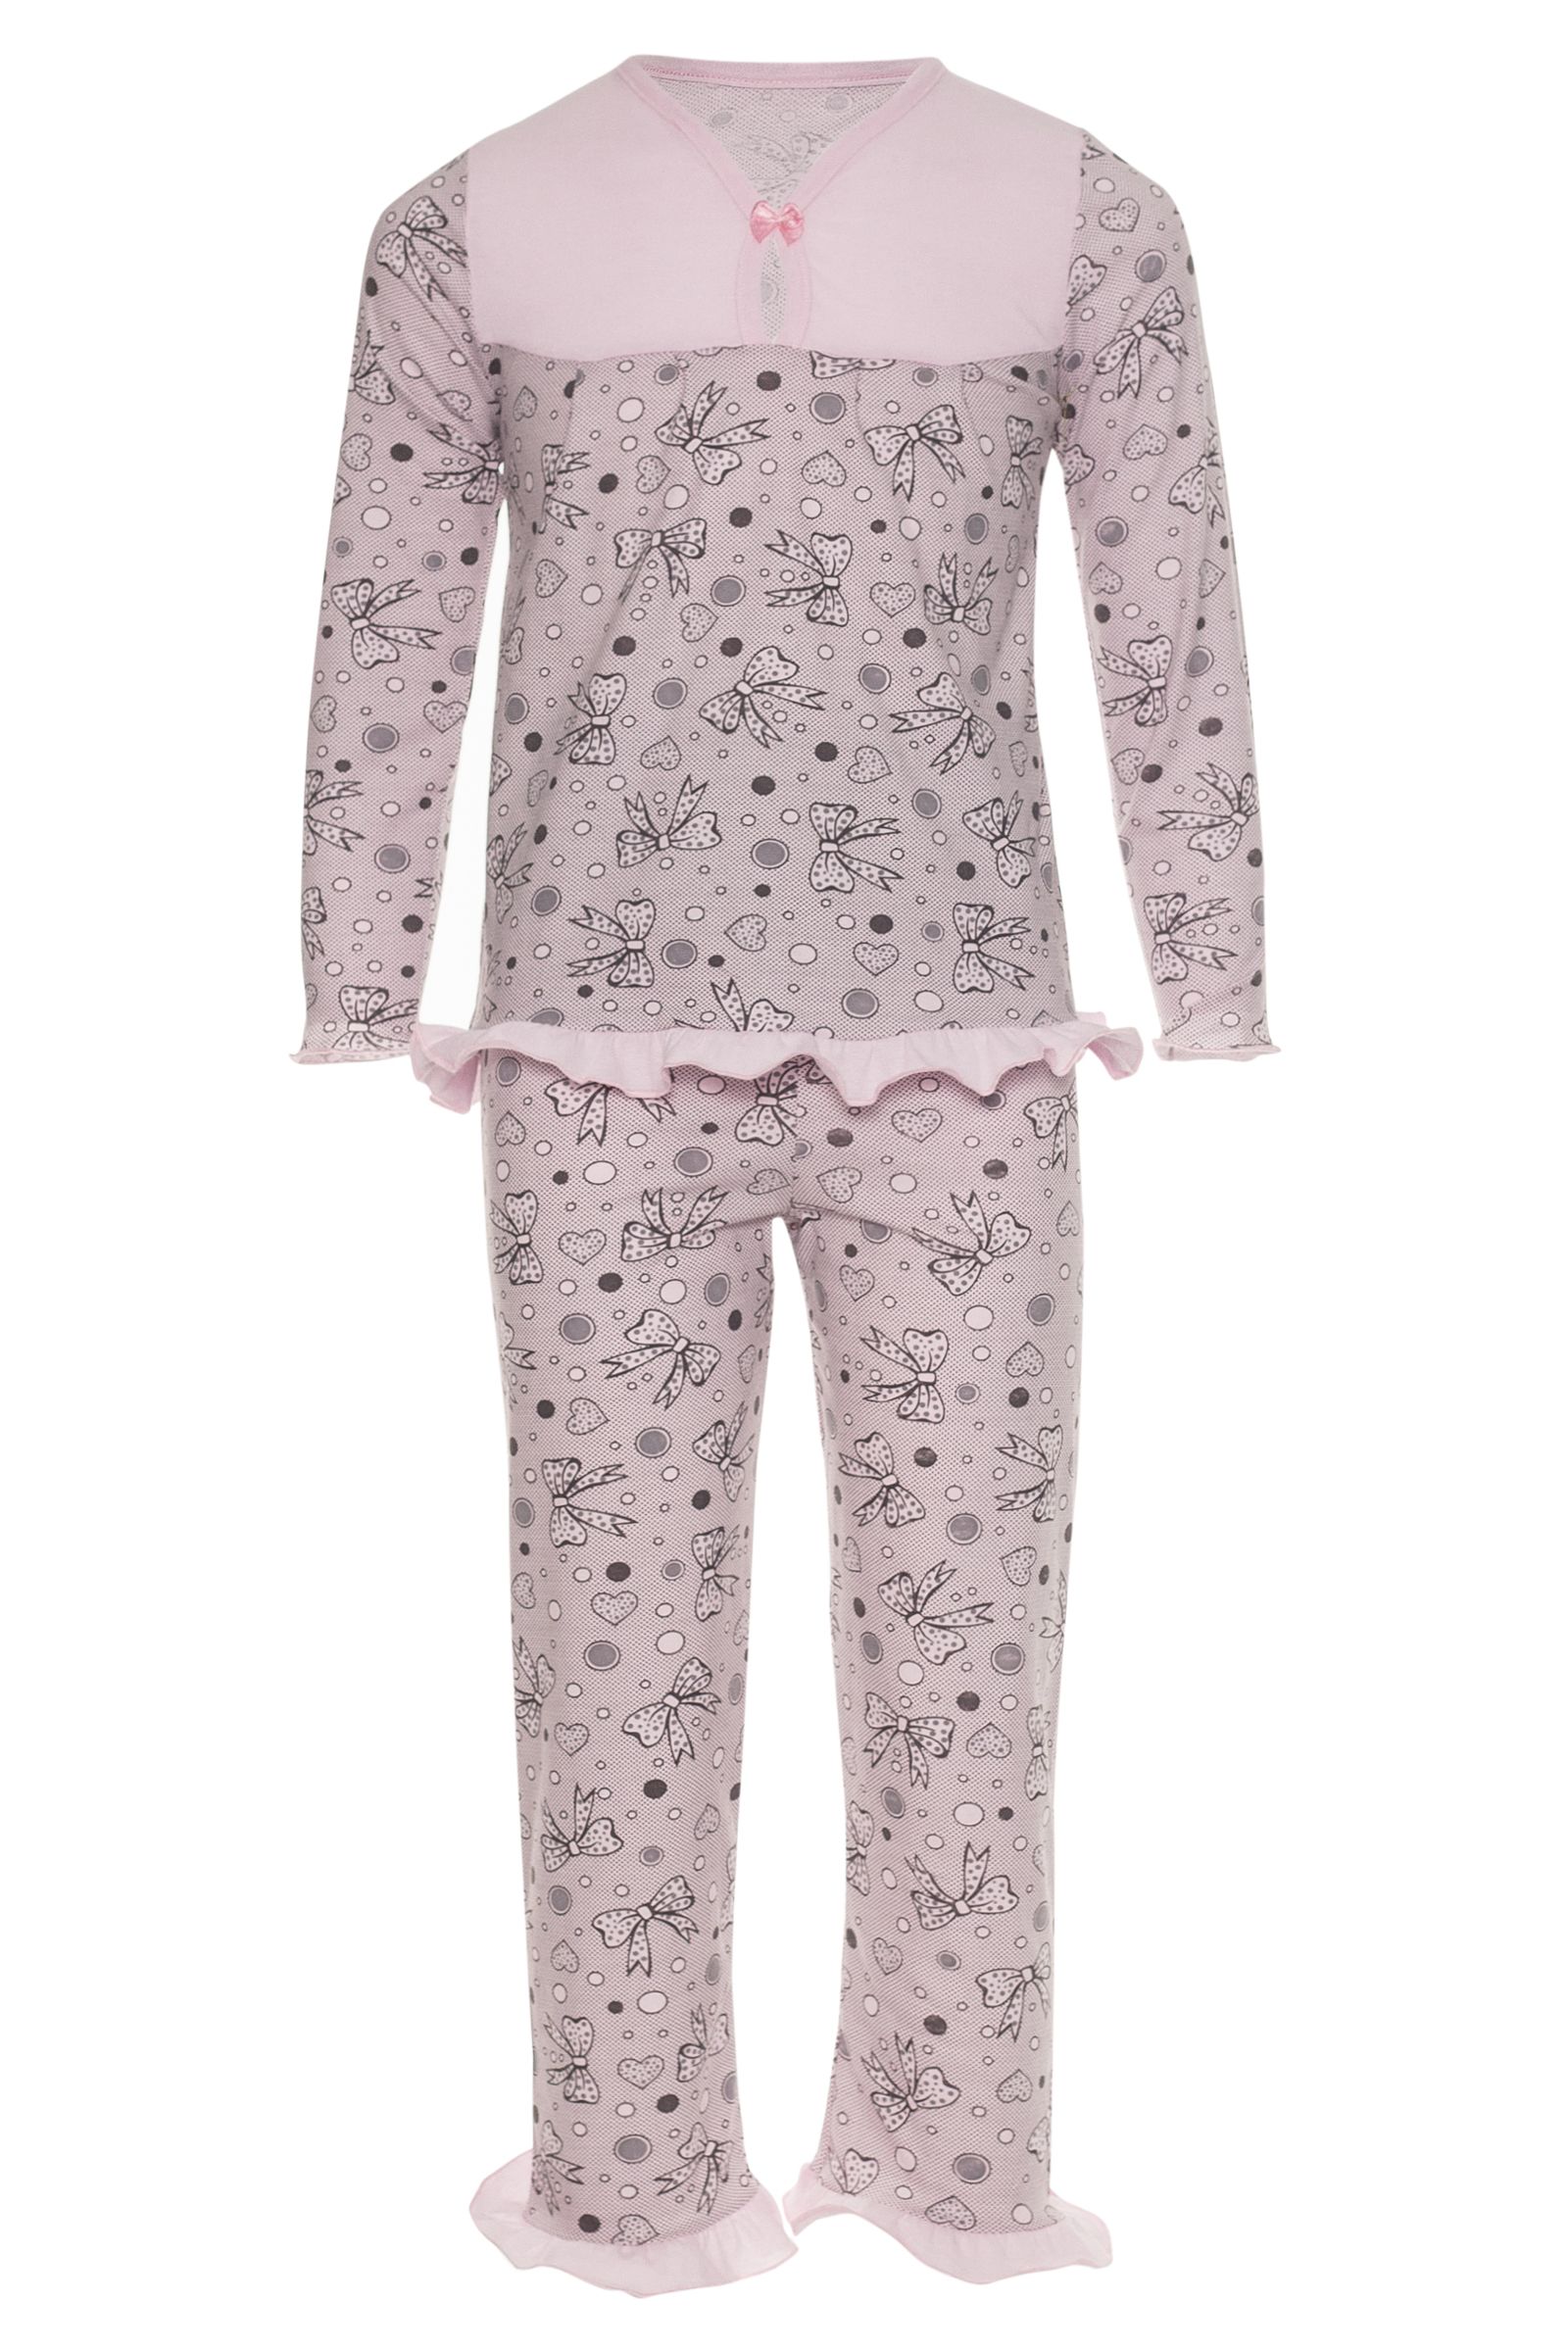 Пижама-ПЖ02-614К оптом от производителя детской одежды 'Алёна'